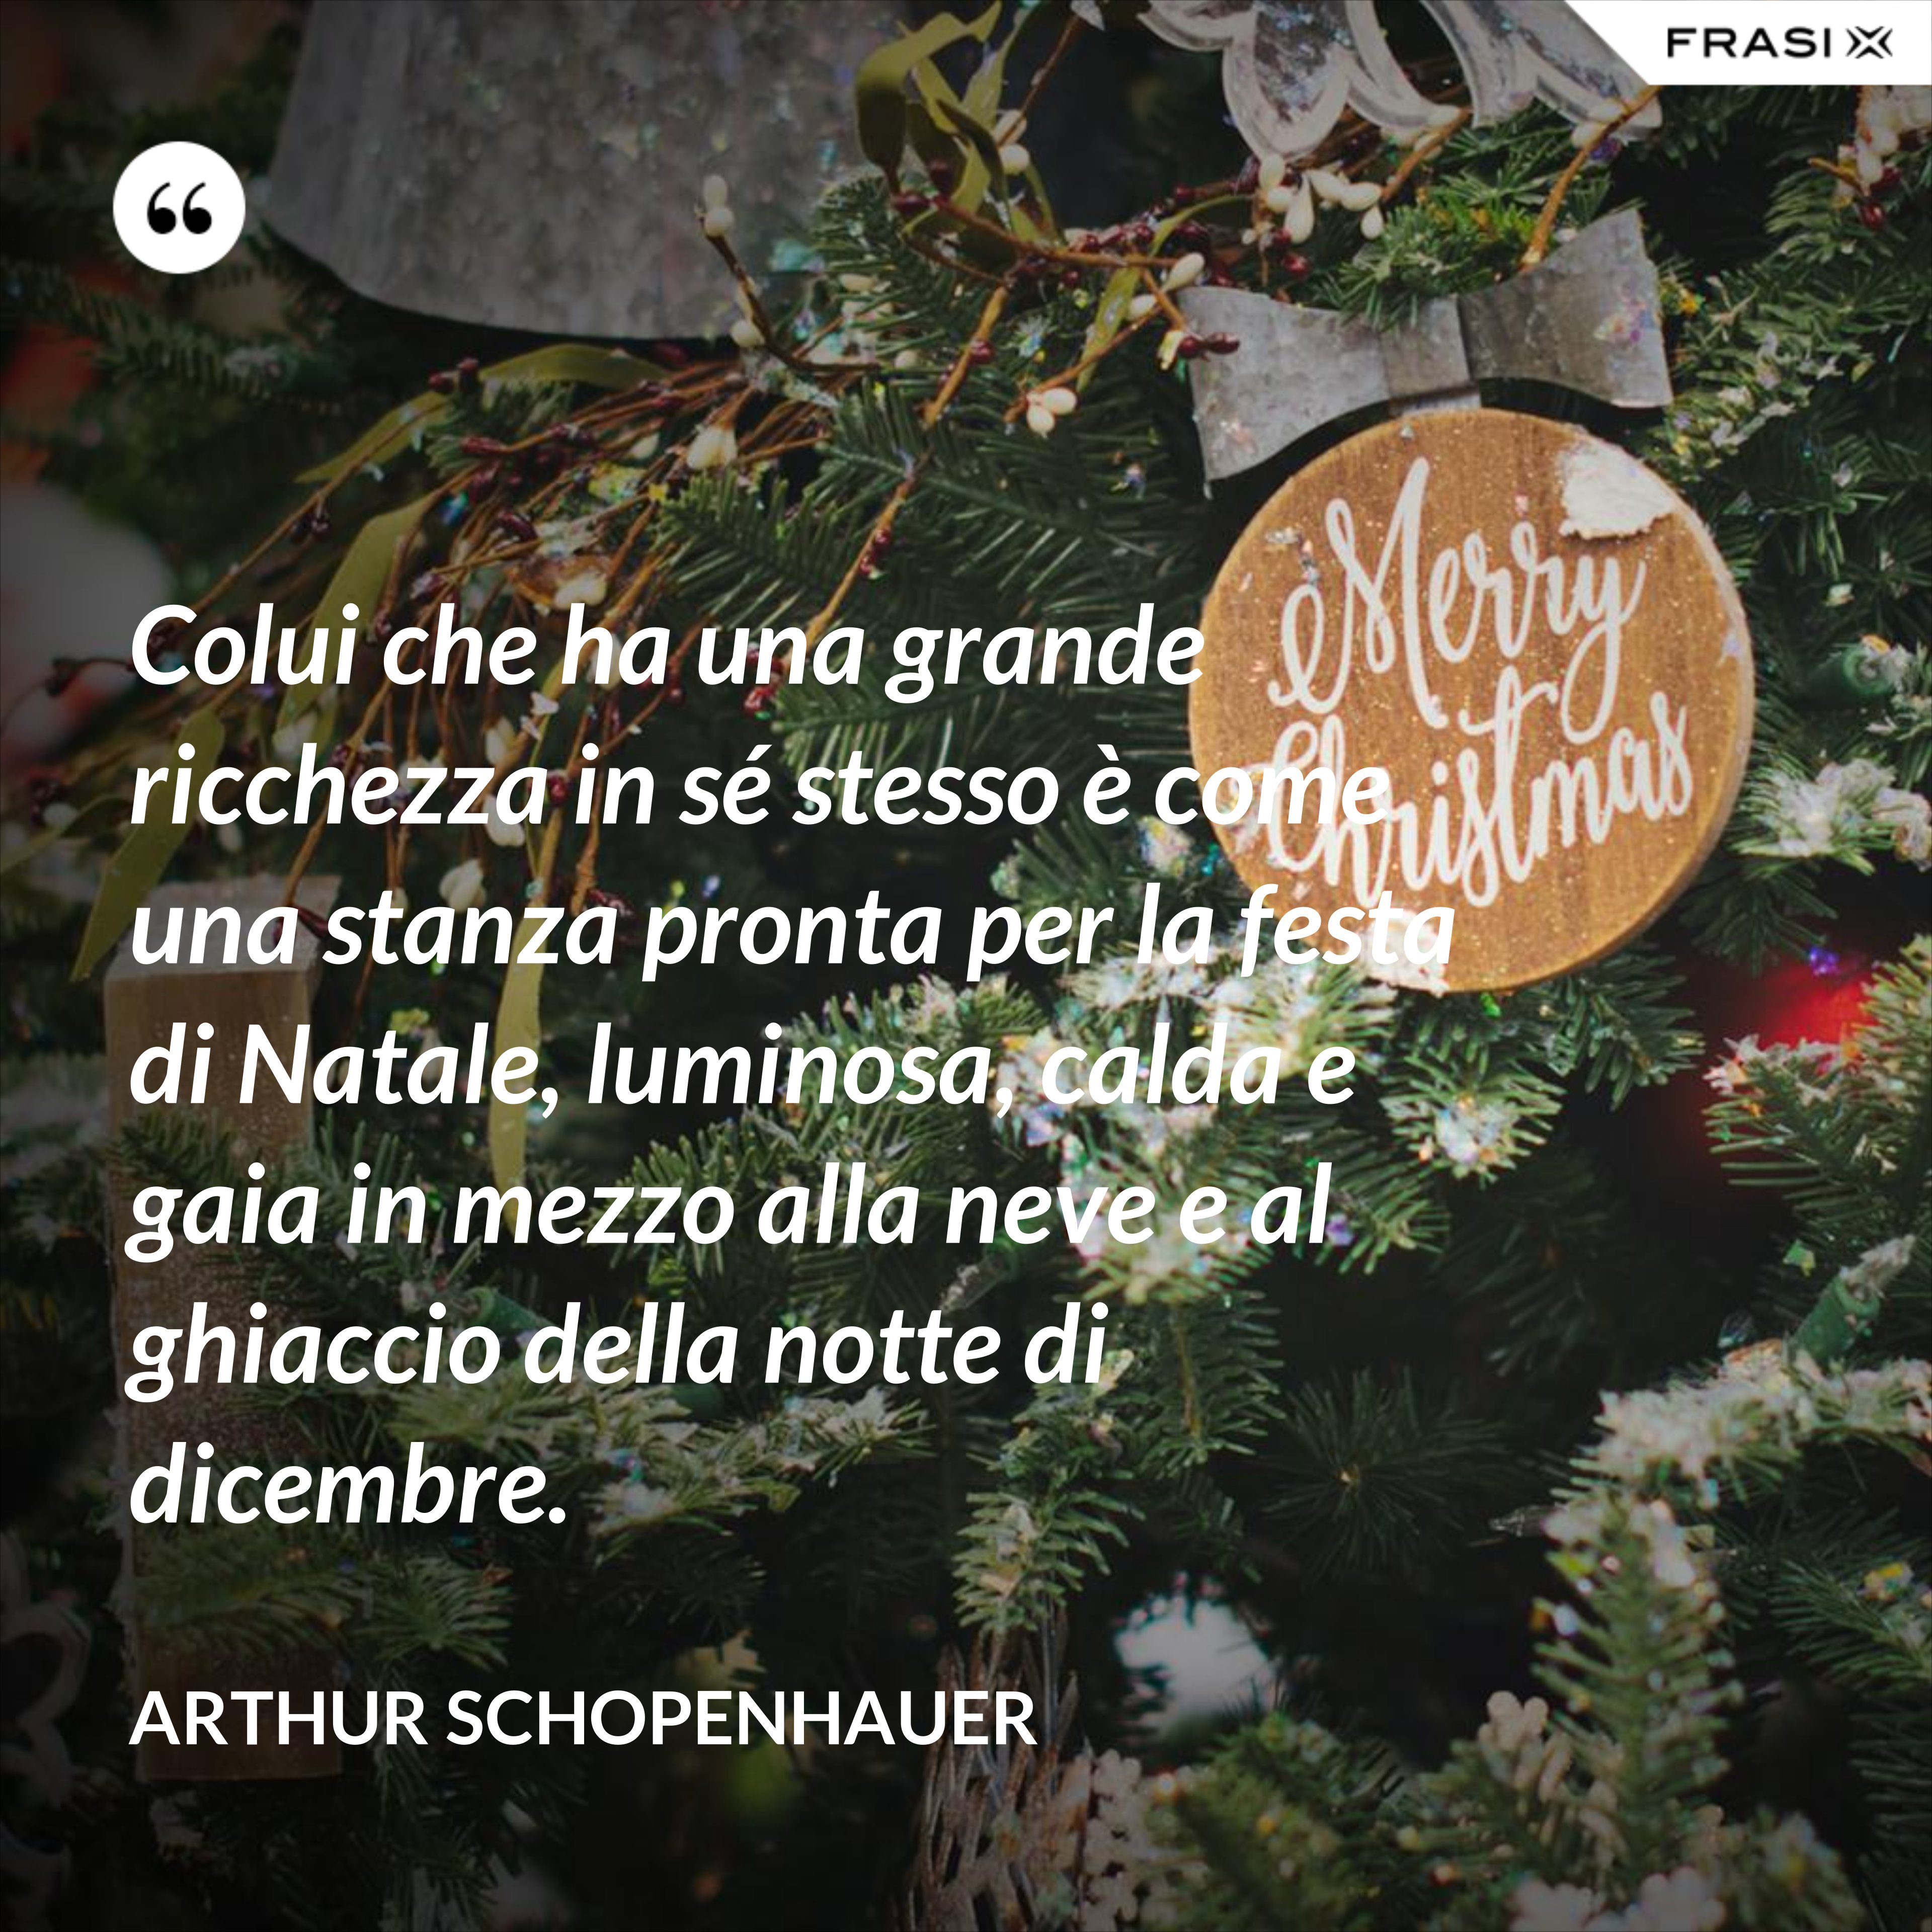 Colui che ha una grande ricchezza in sé stesso è come una stanza pronta per la festa di Natale, luminosa, calda e gaia in mezzo alla neve e al ghiaccio della notte di dicembre. - Arthur Schopenhauer